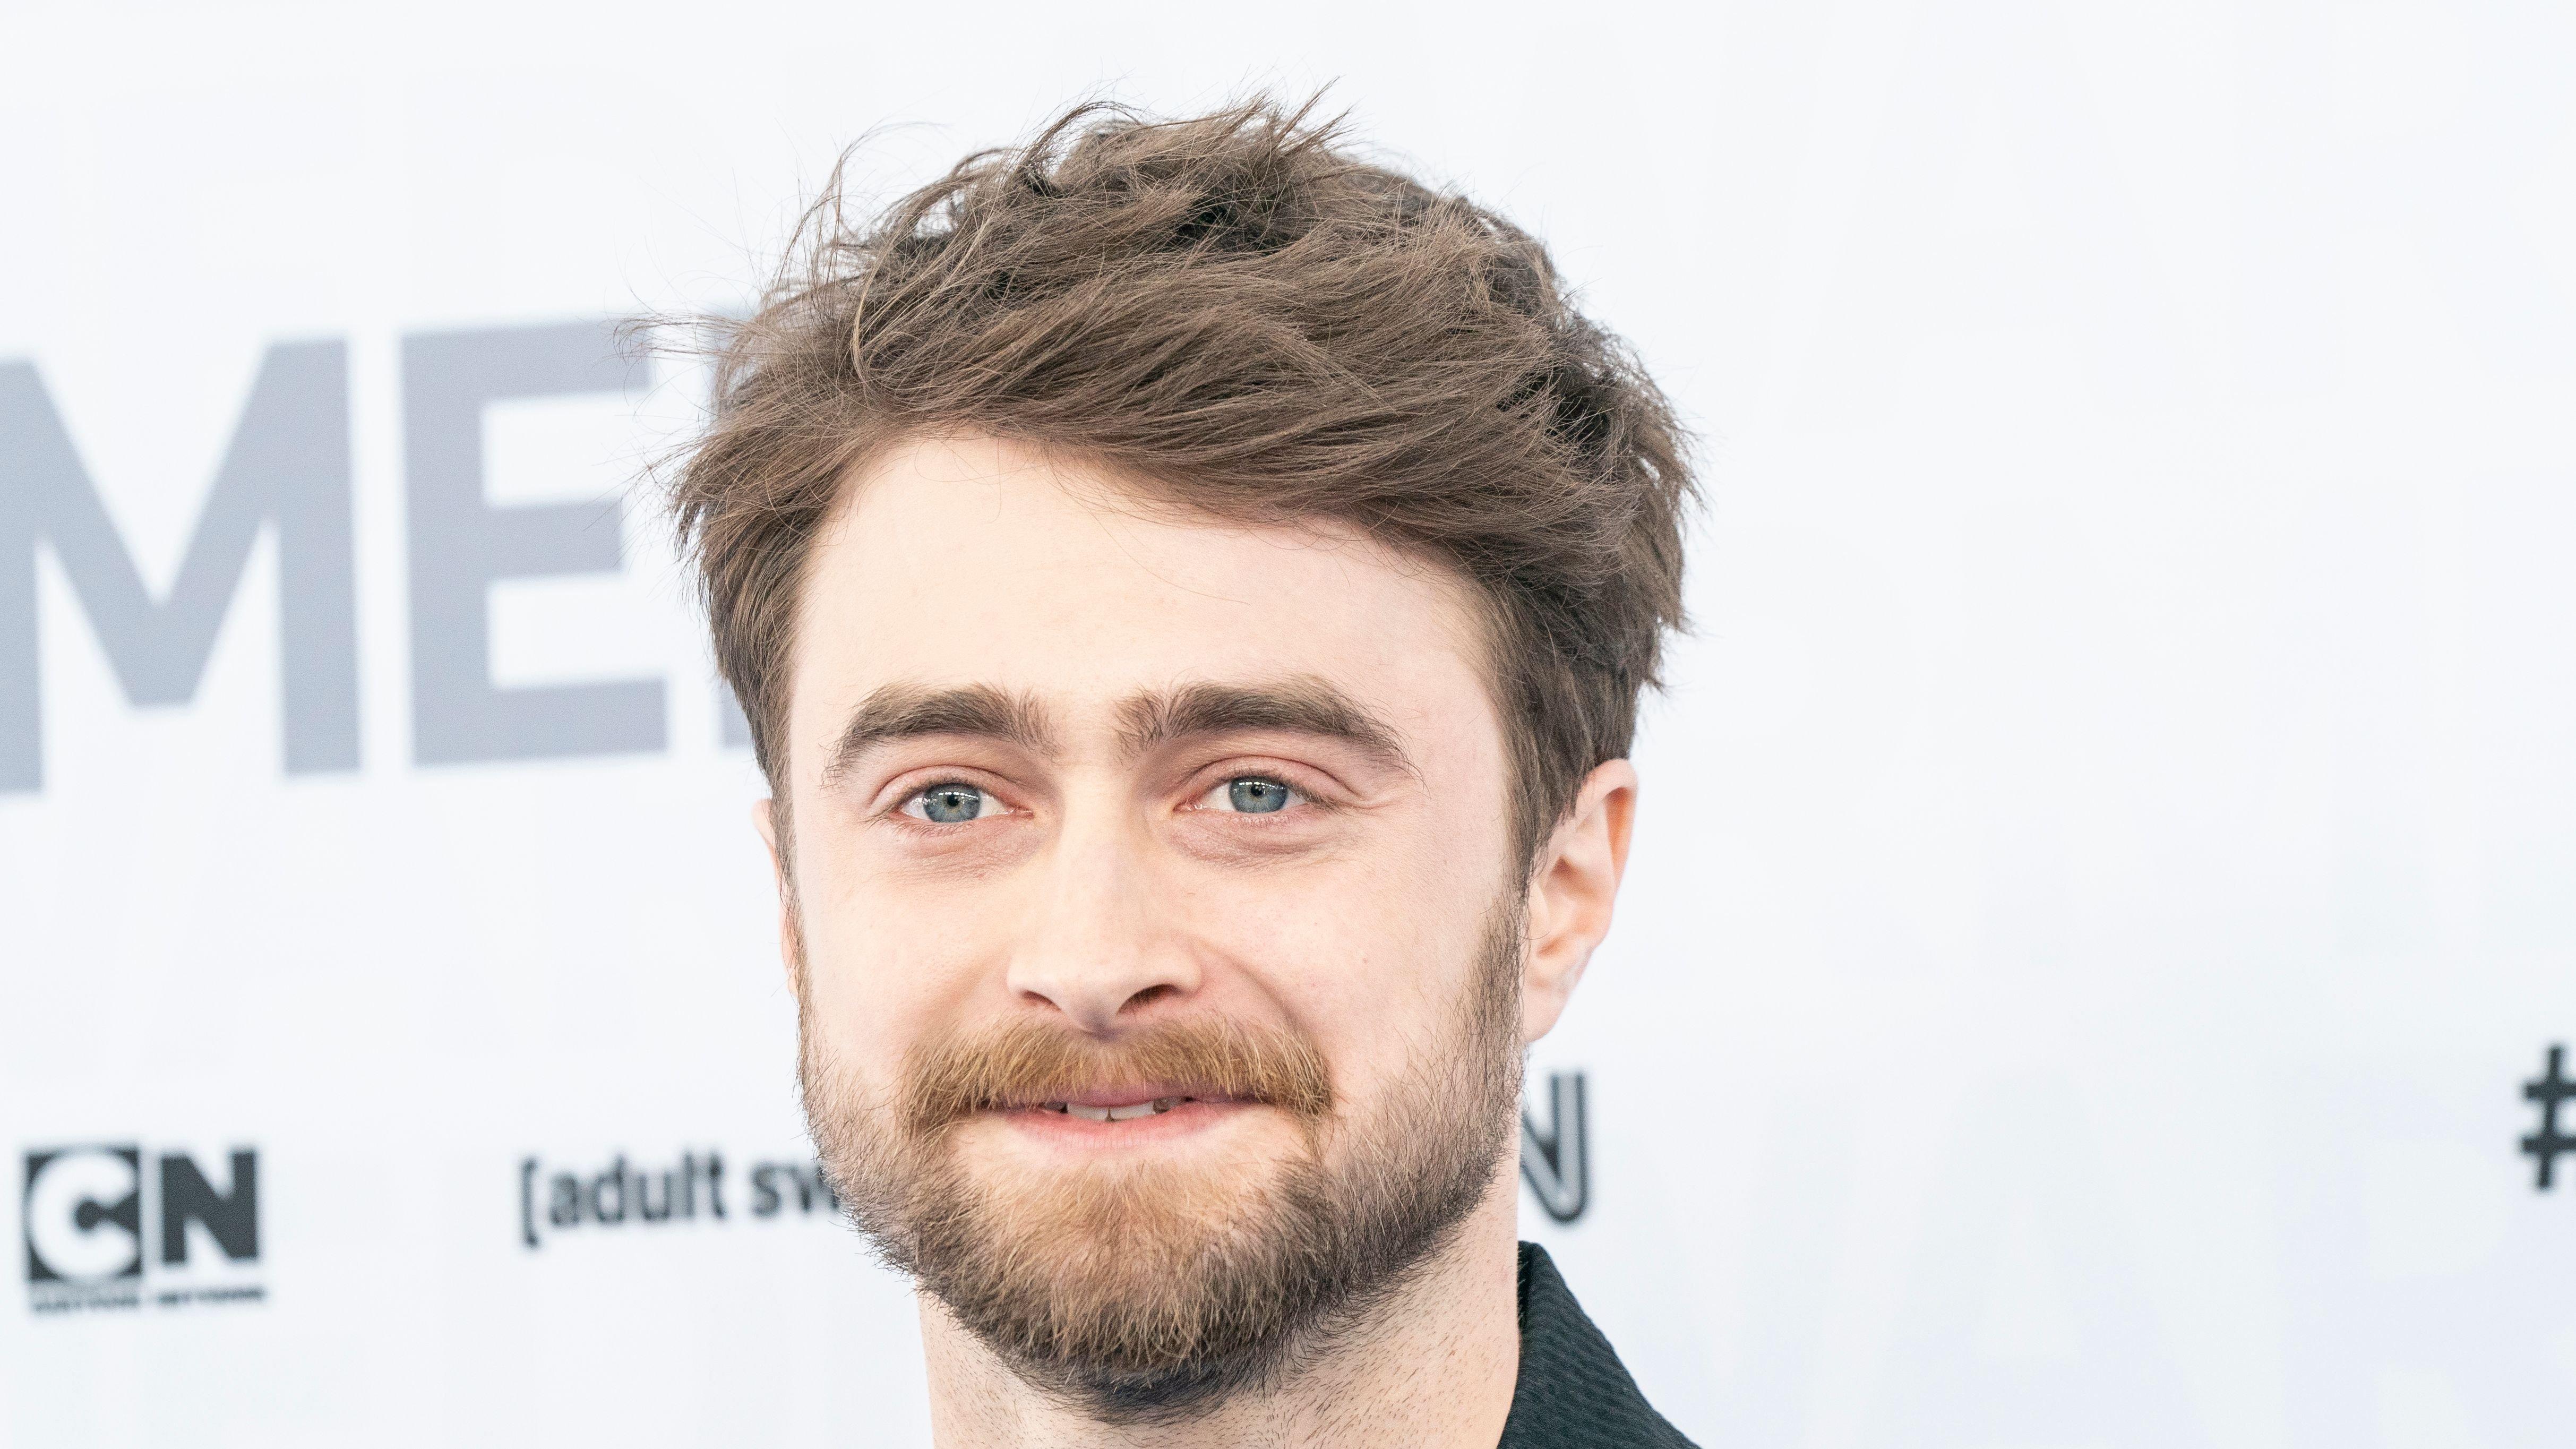 Daniel Radcliffe of 'Harry Potter' fame